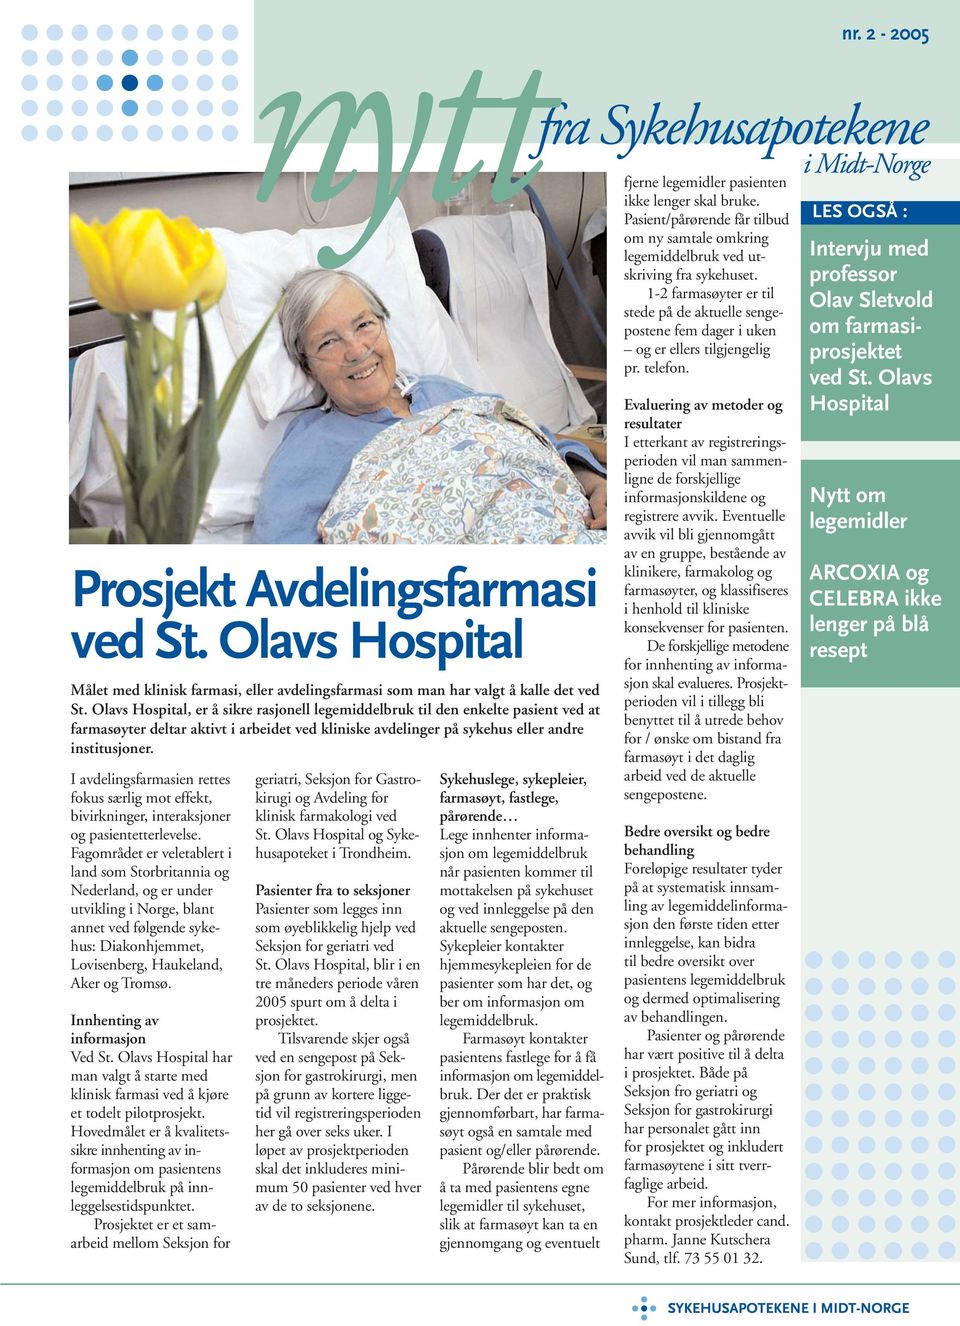 Innhenting av informasjon Ved St. Olavs Hospital har man valgt å starte med klinisk farmasi ved å kjøre et todelt pilotprosjekt.